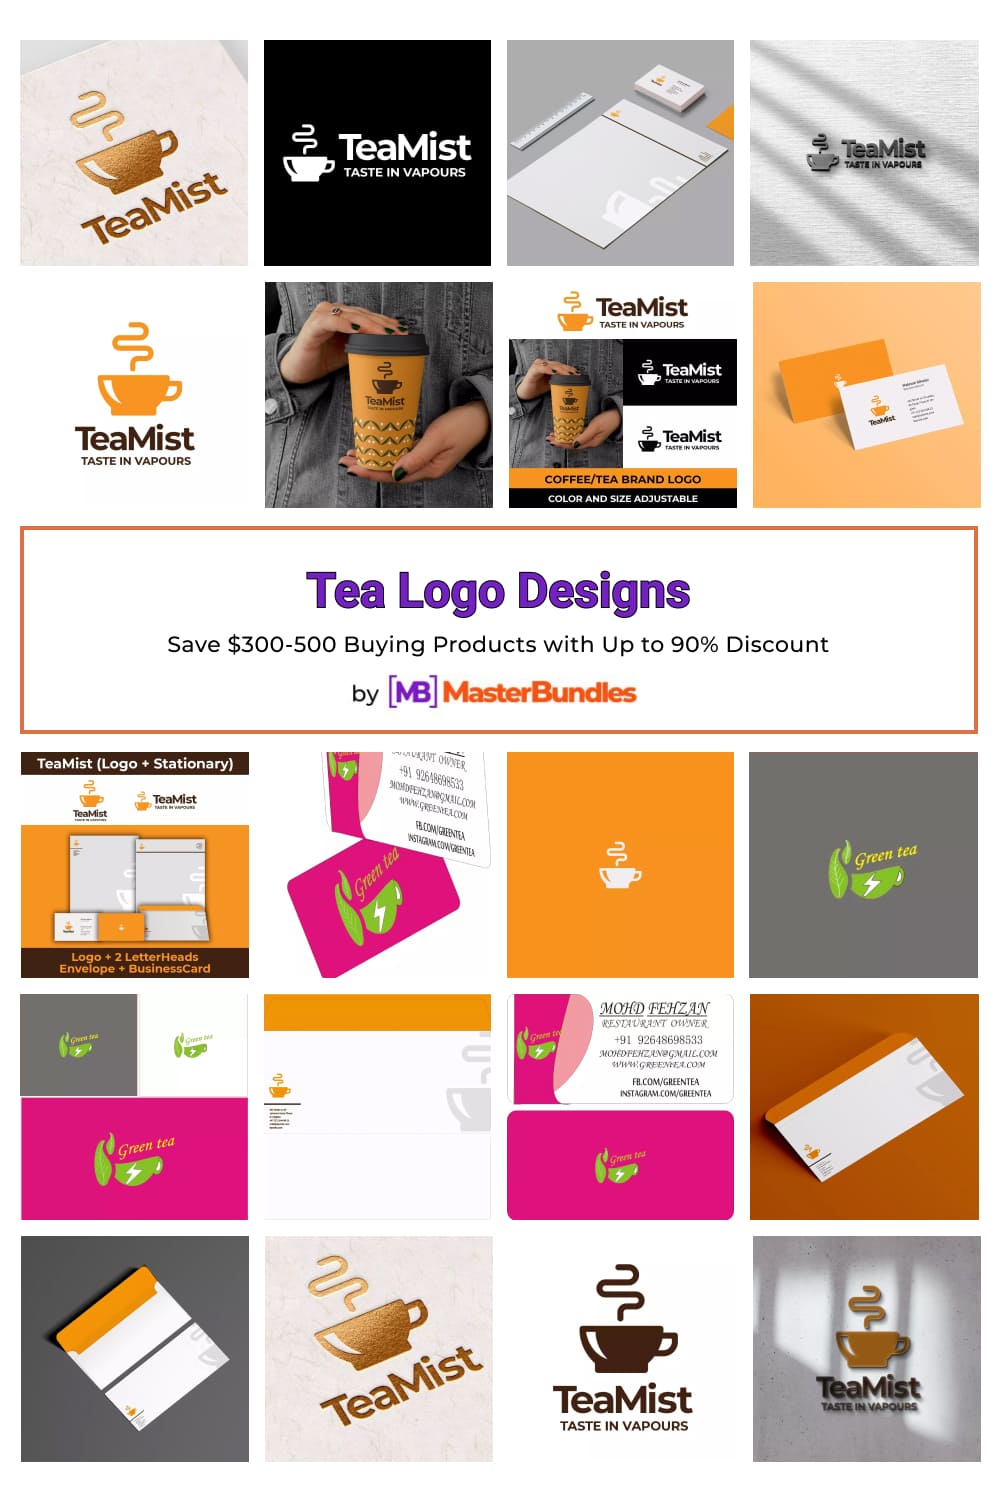 Tea Logo Designs for Pinterest.